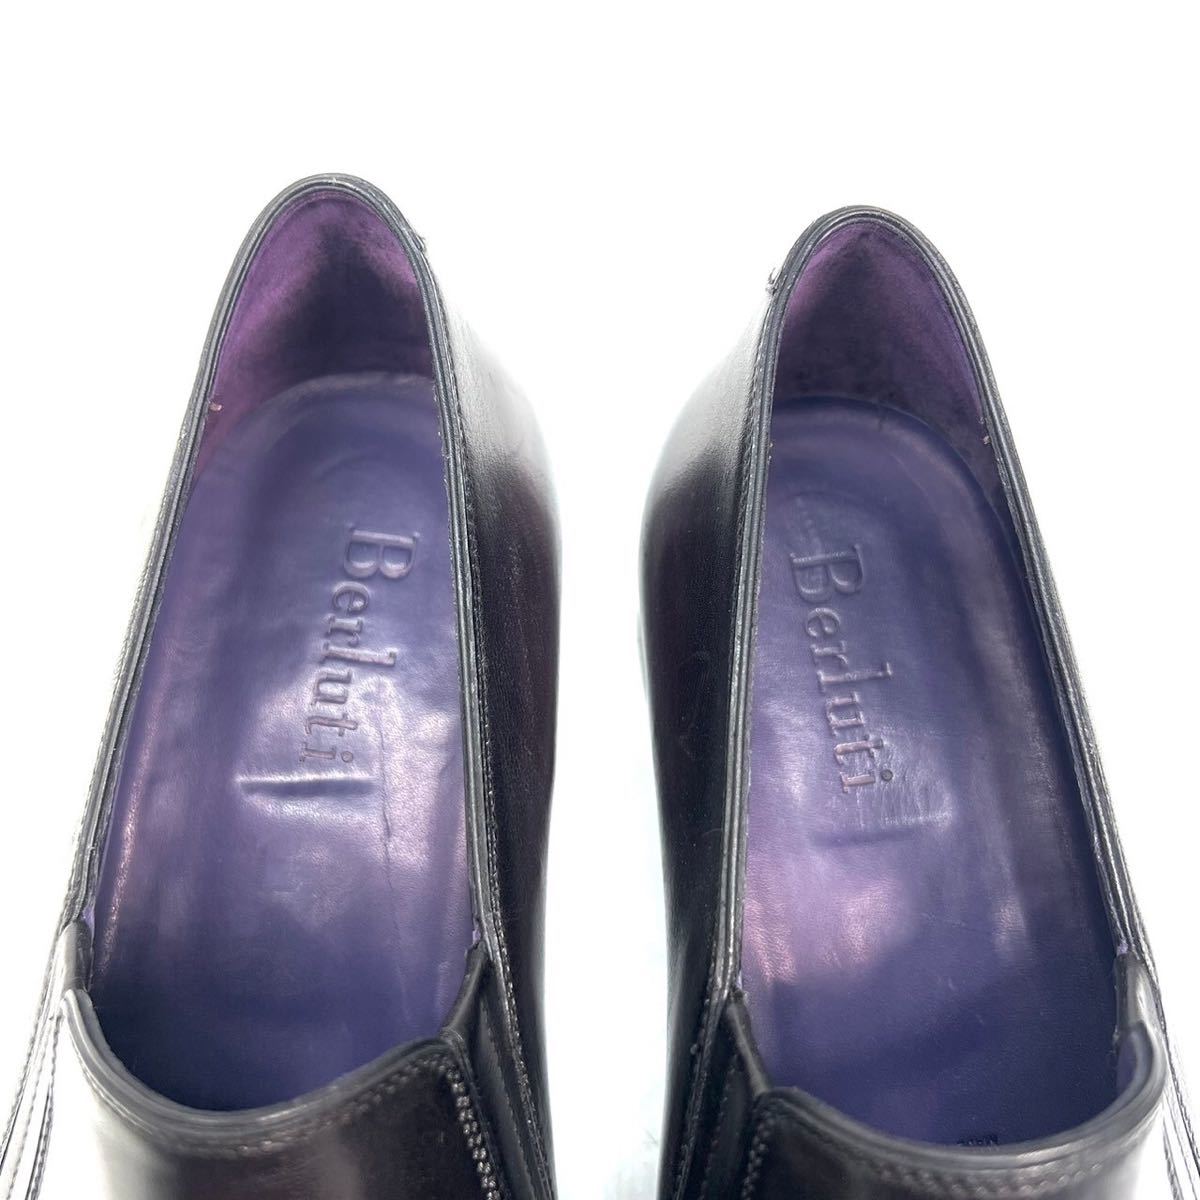 Berluti Berluti кисточка Loafer кожа обувь pa чай n9 1/2 27.5cm мужской обувь бизнес обувь черный Brown 